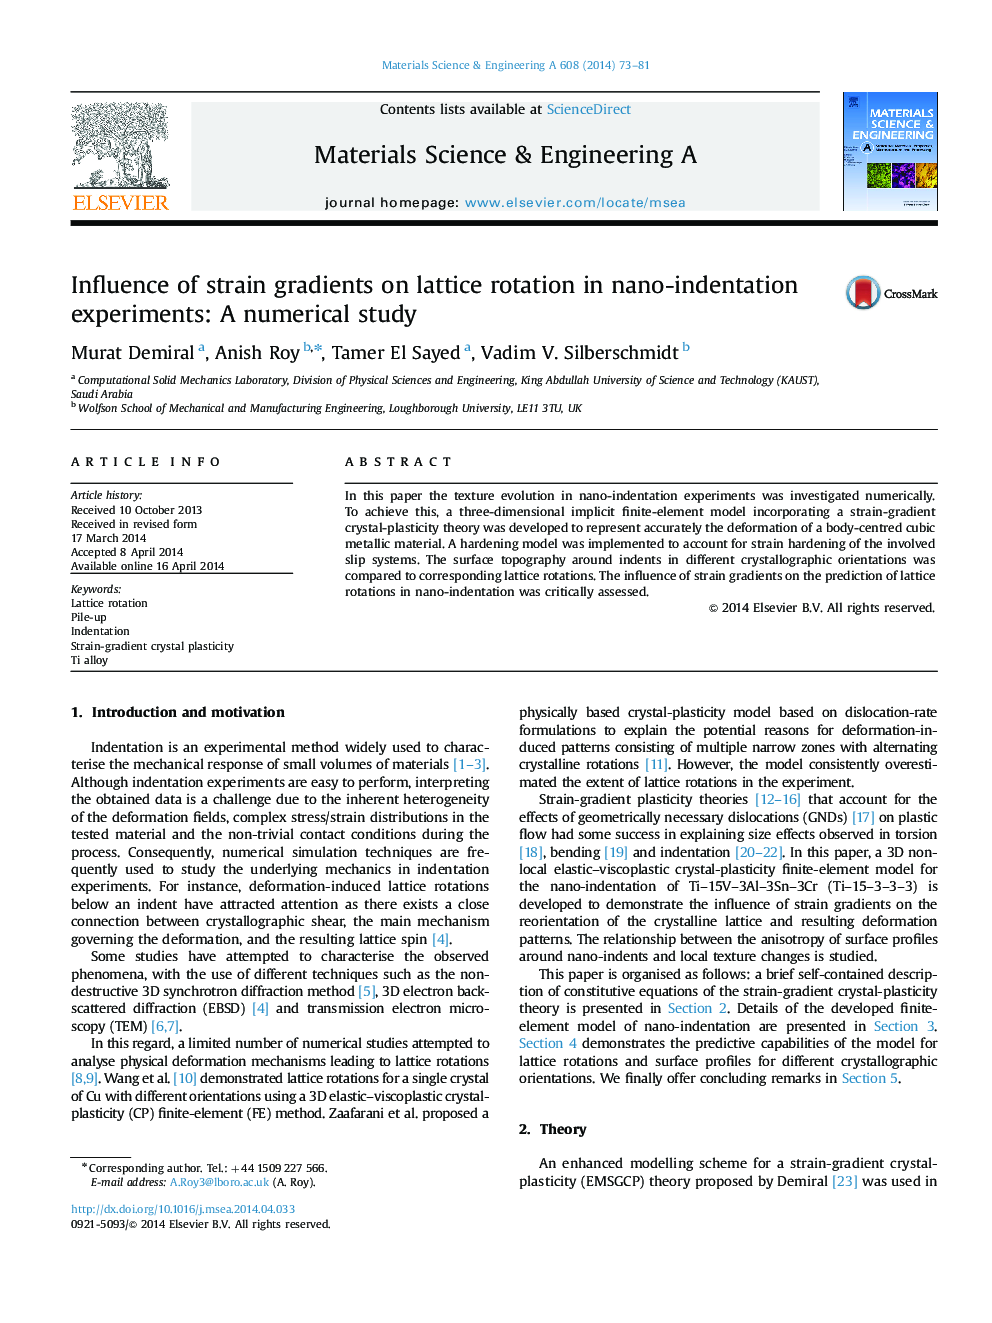 تأثیر شیب فشار در چرخش شبکه در آزمایش های نانو دندانه ای: یک مطالعه عددی 